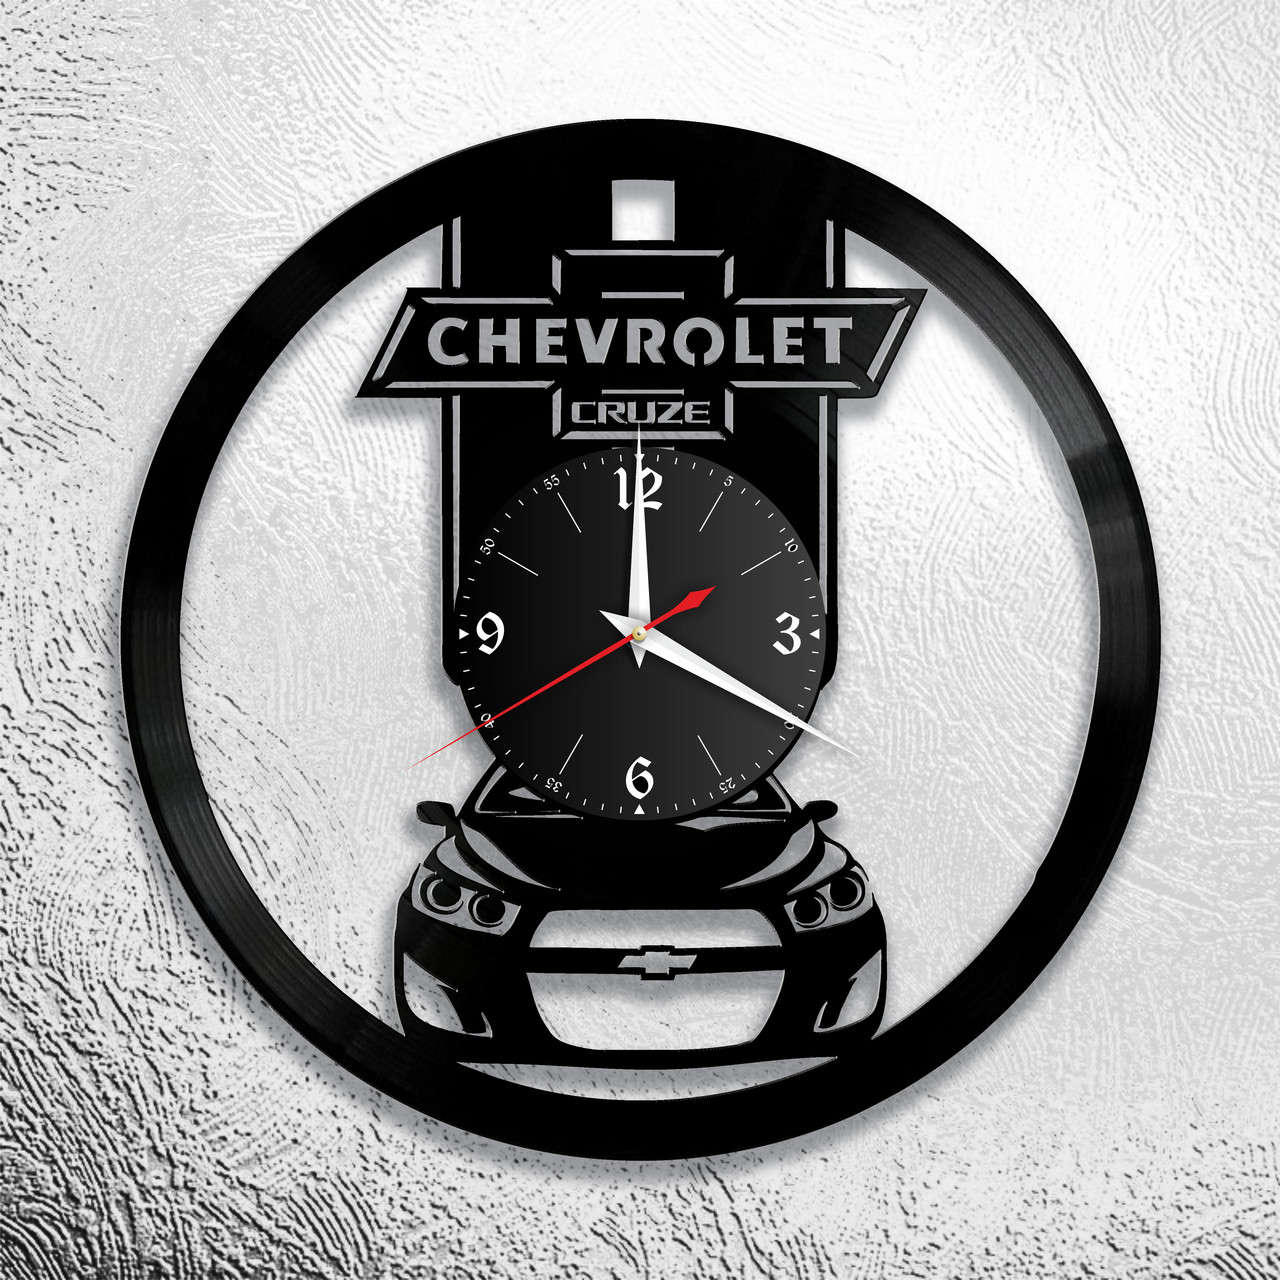 Часы из виниловой пластинки  "Chevrolet" версия 2 Cruze, фото 1